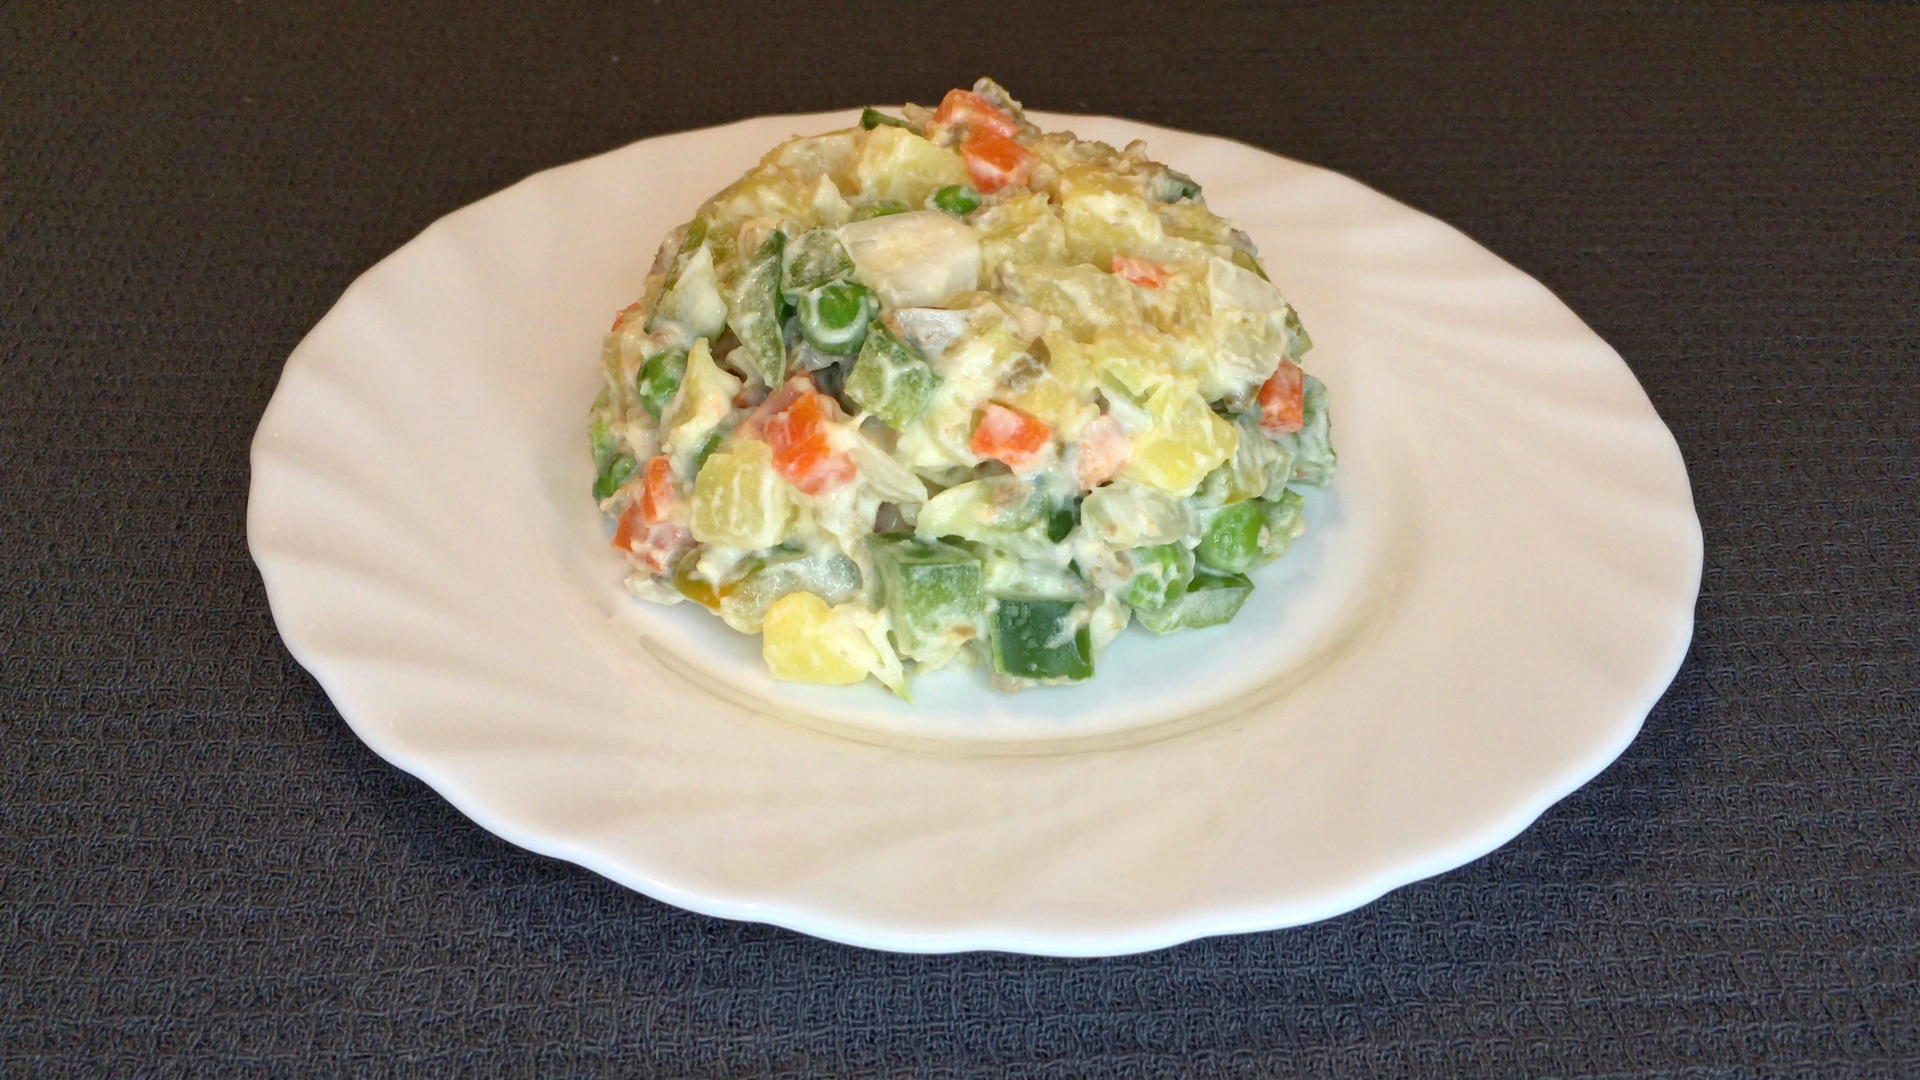 Фото к рецепту: Картофельный салат с болгарским перцем и оливками